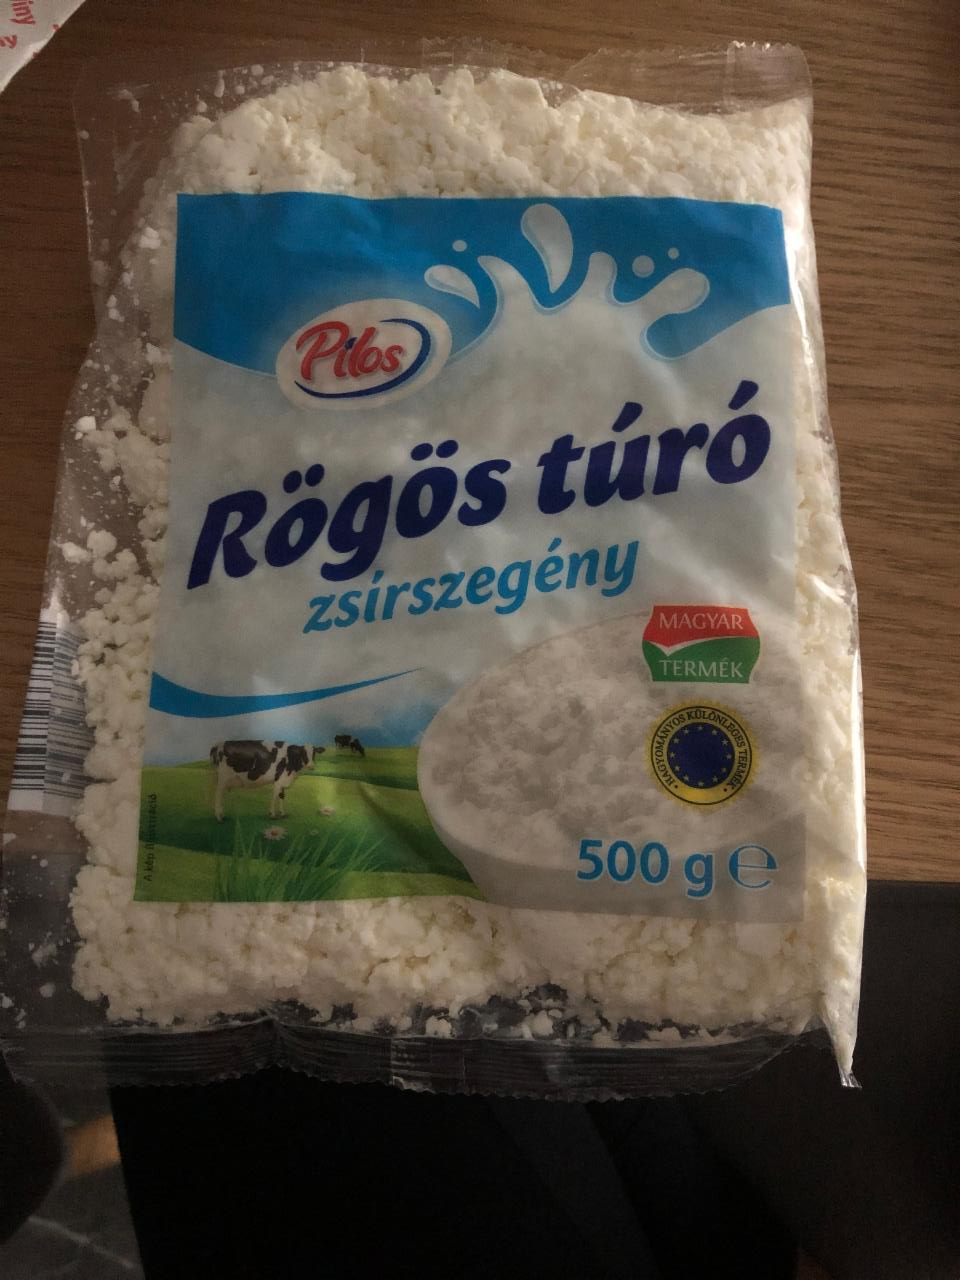 Fotografie - Rögös túró zsítszegény Pilos